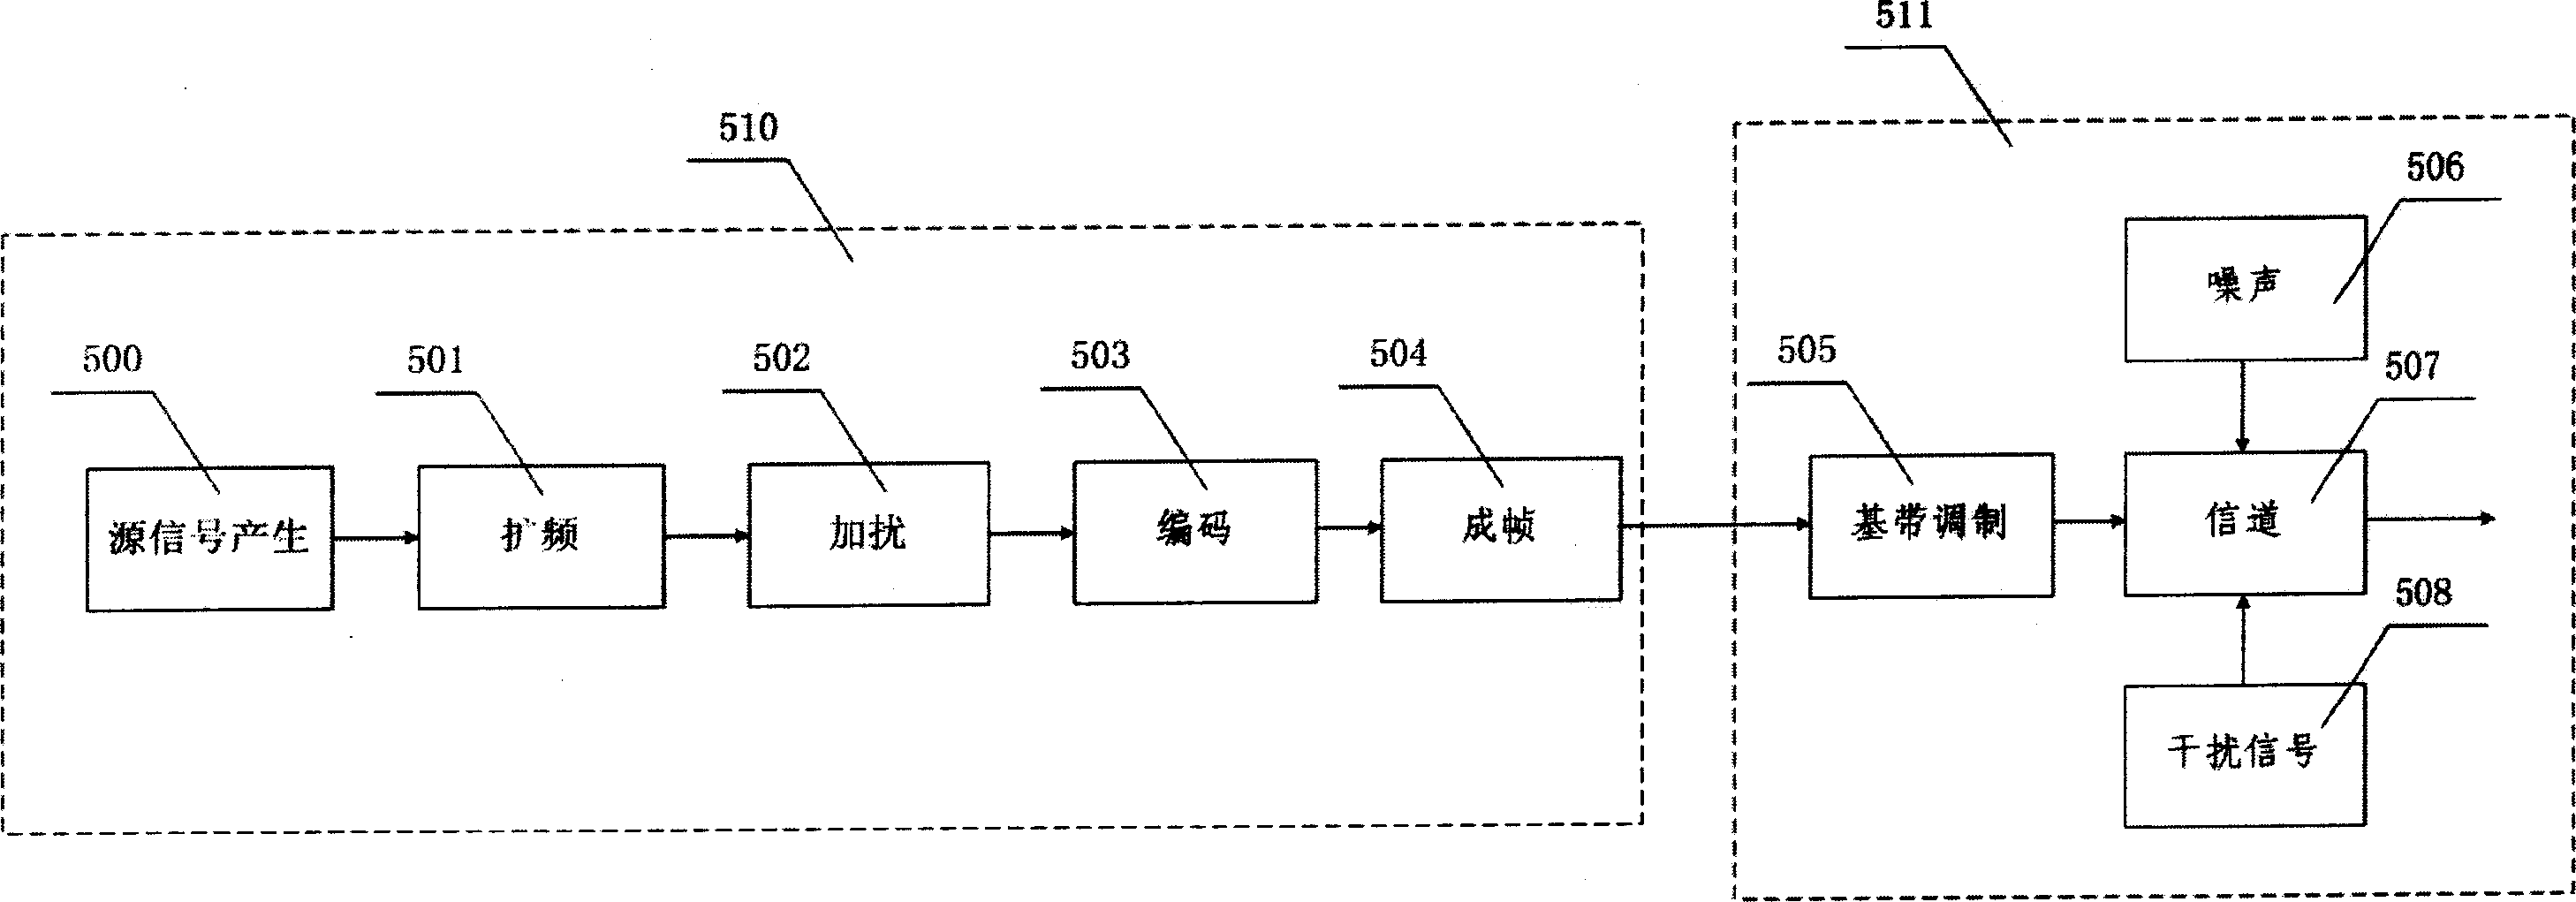 Radio communication simulation device based on FPGA and USB storage device